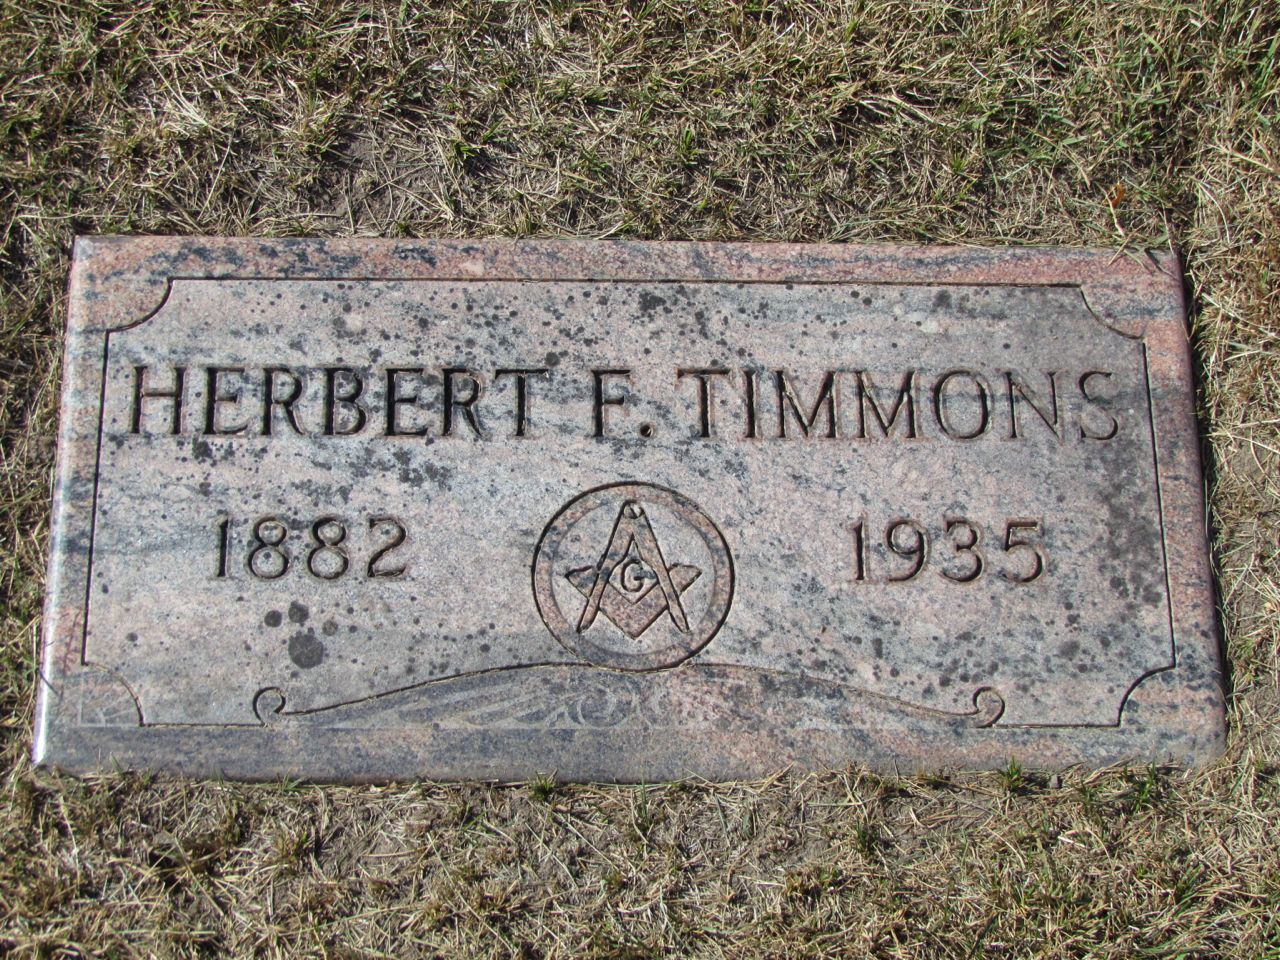 Herbert Fletcher Timmons, 1882-1935